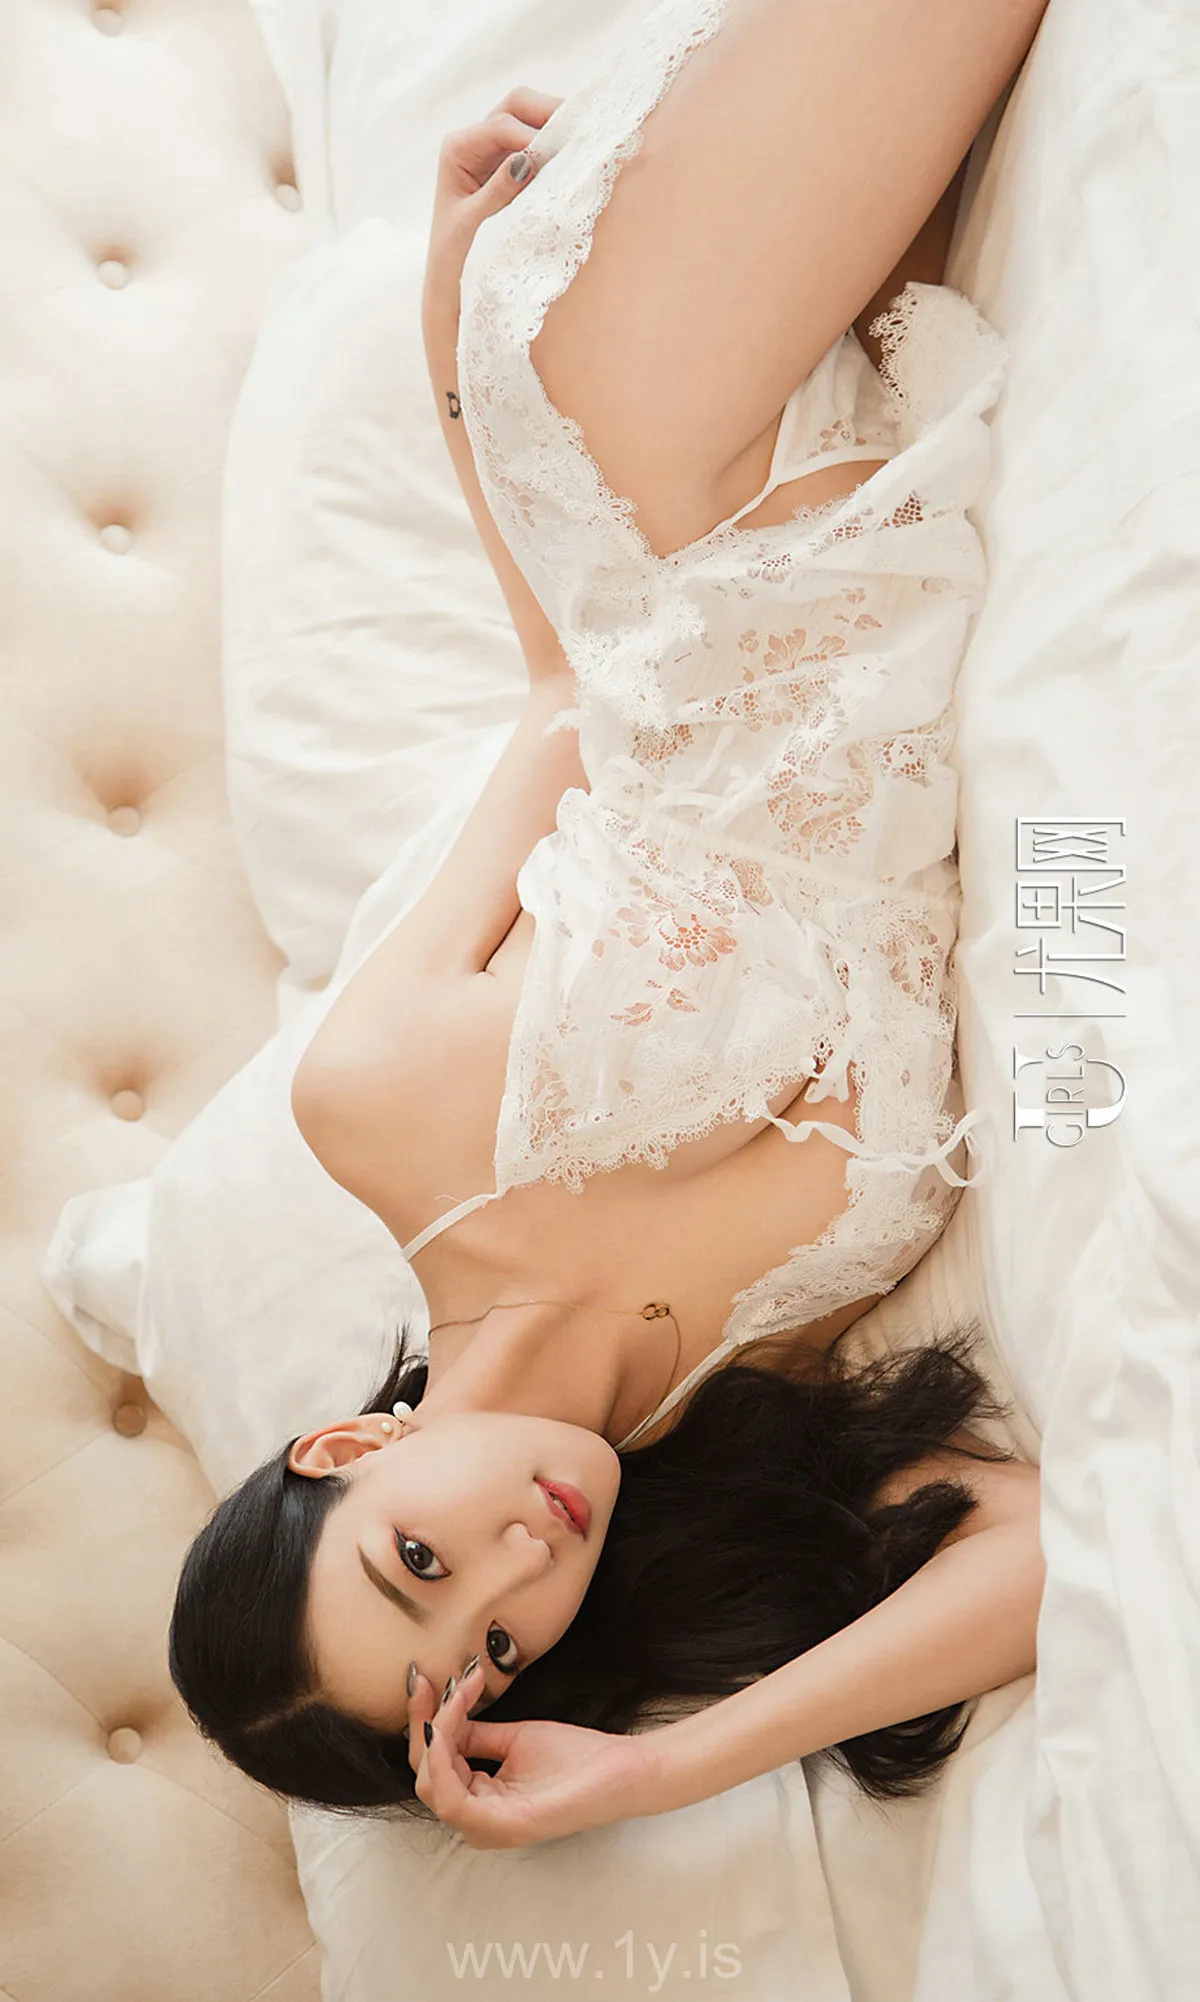 UGIRLS NO.1346 Beautiful & Sexy Chinese Mature Princess 吾凡